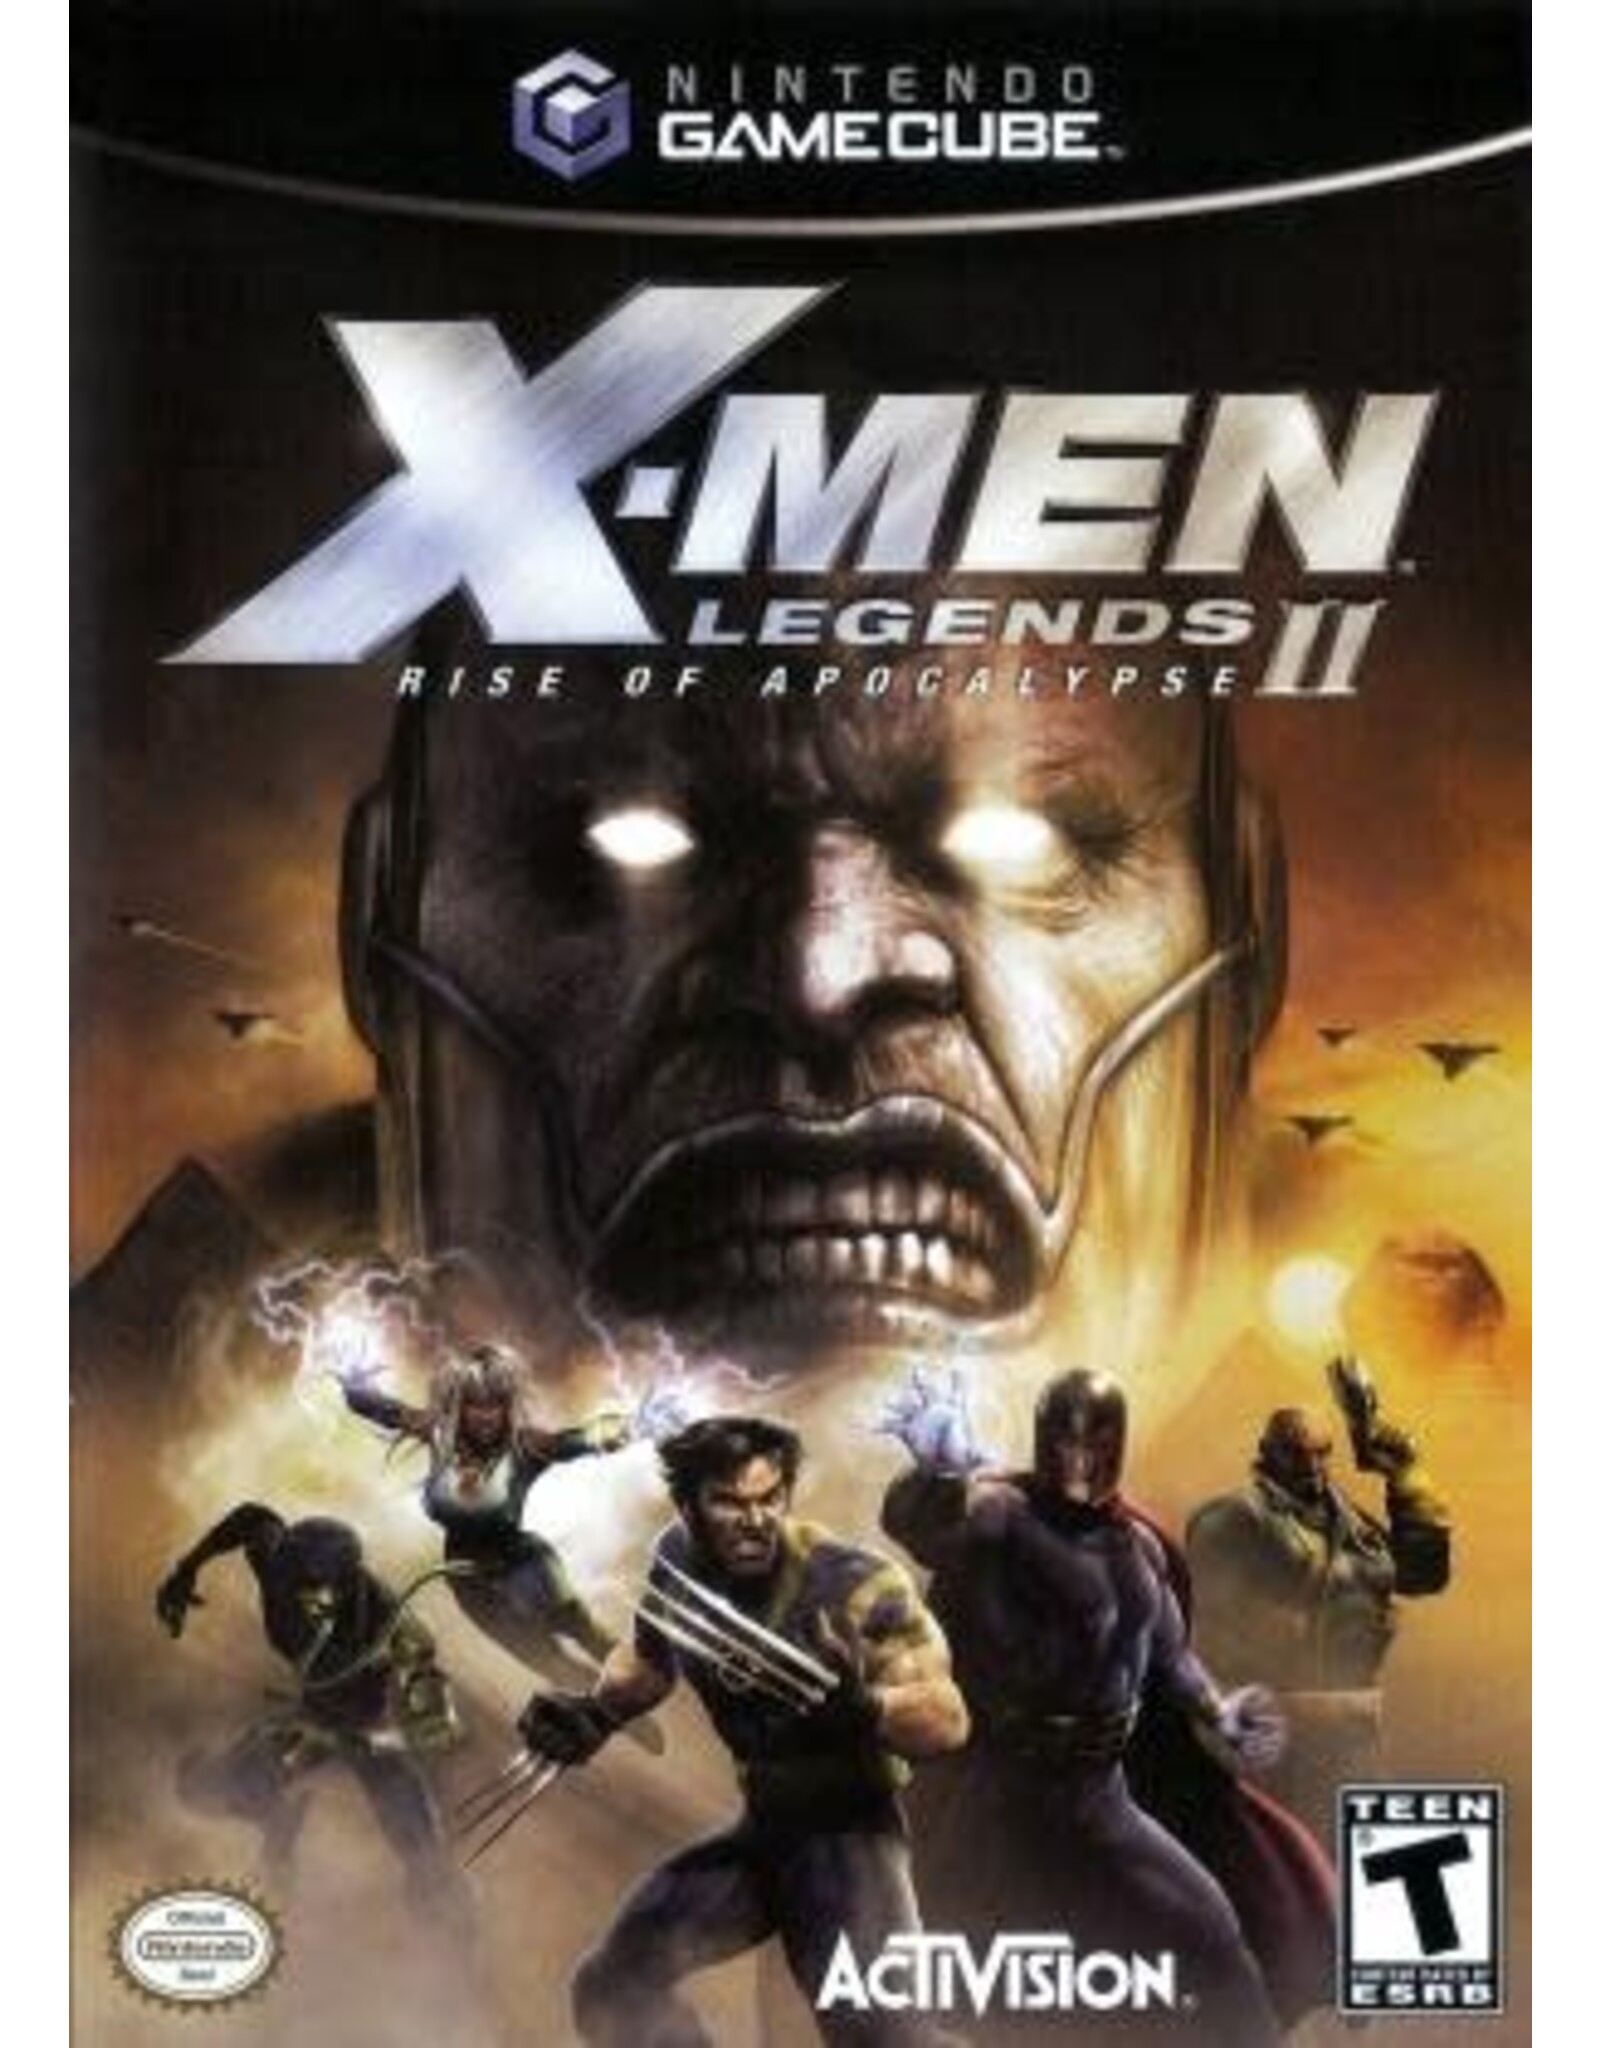 Gamecube X-men Legends II (Used)